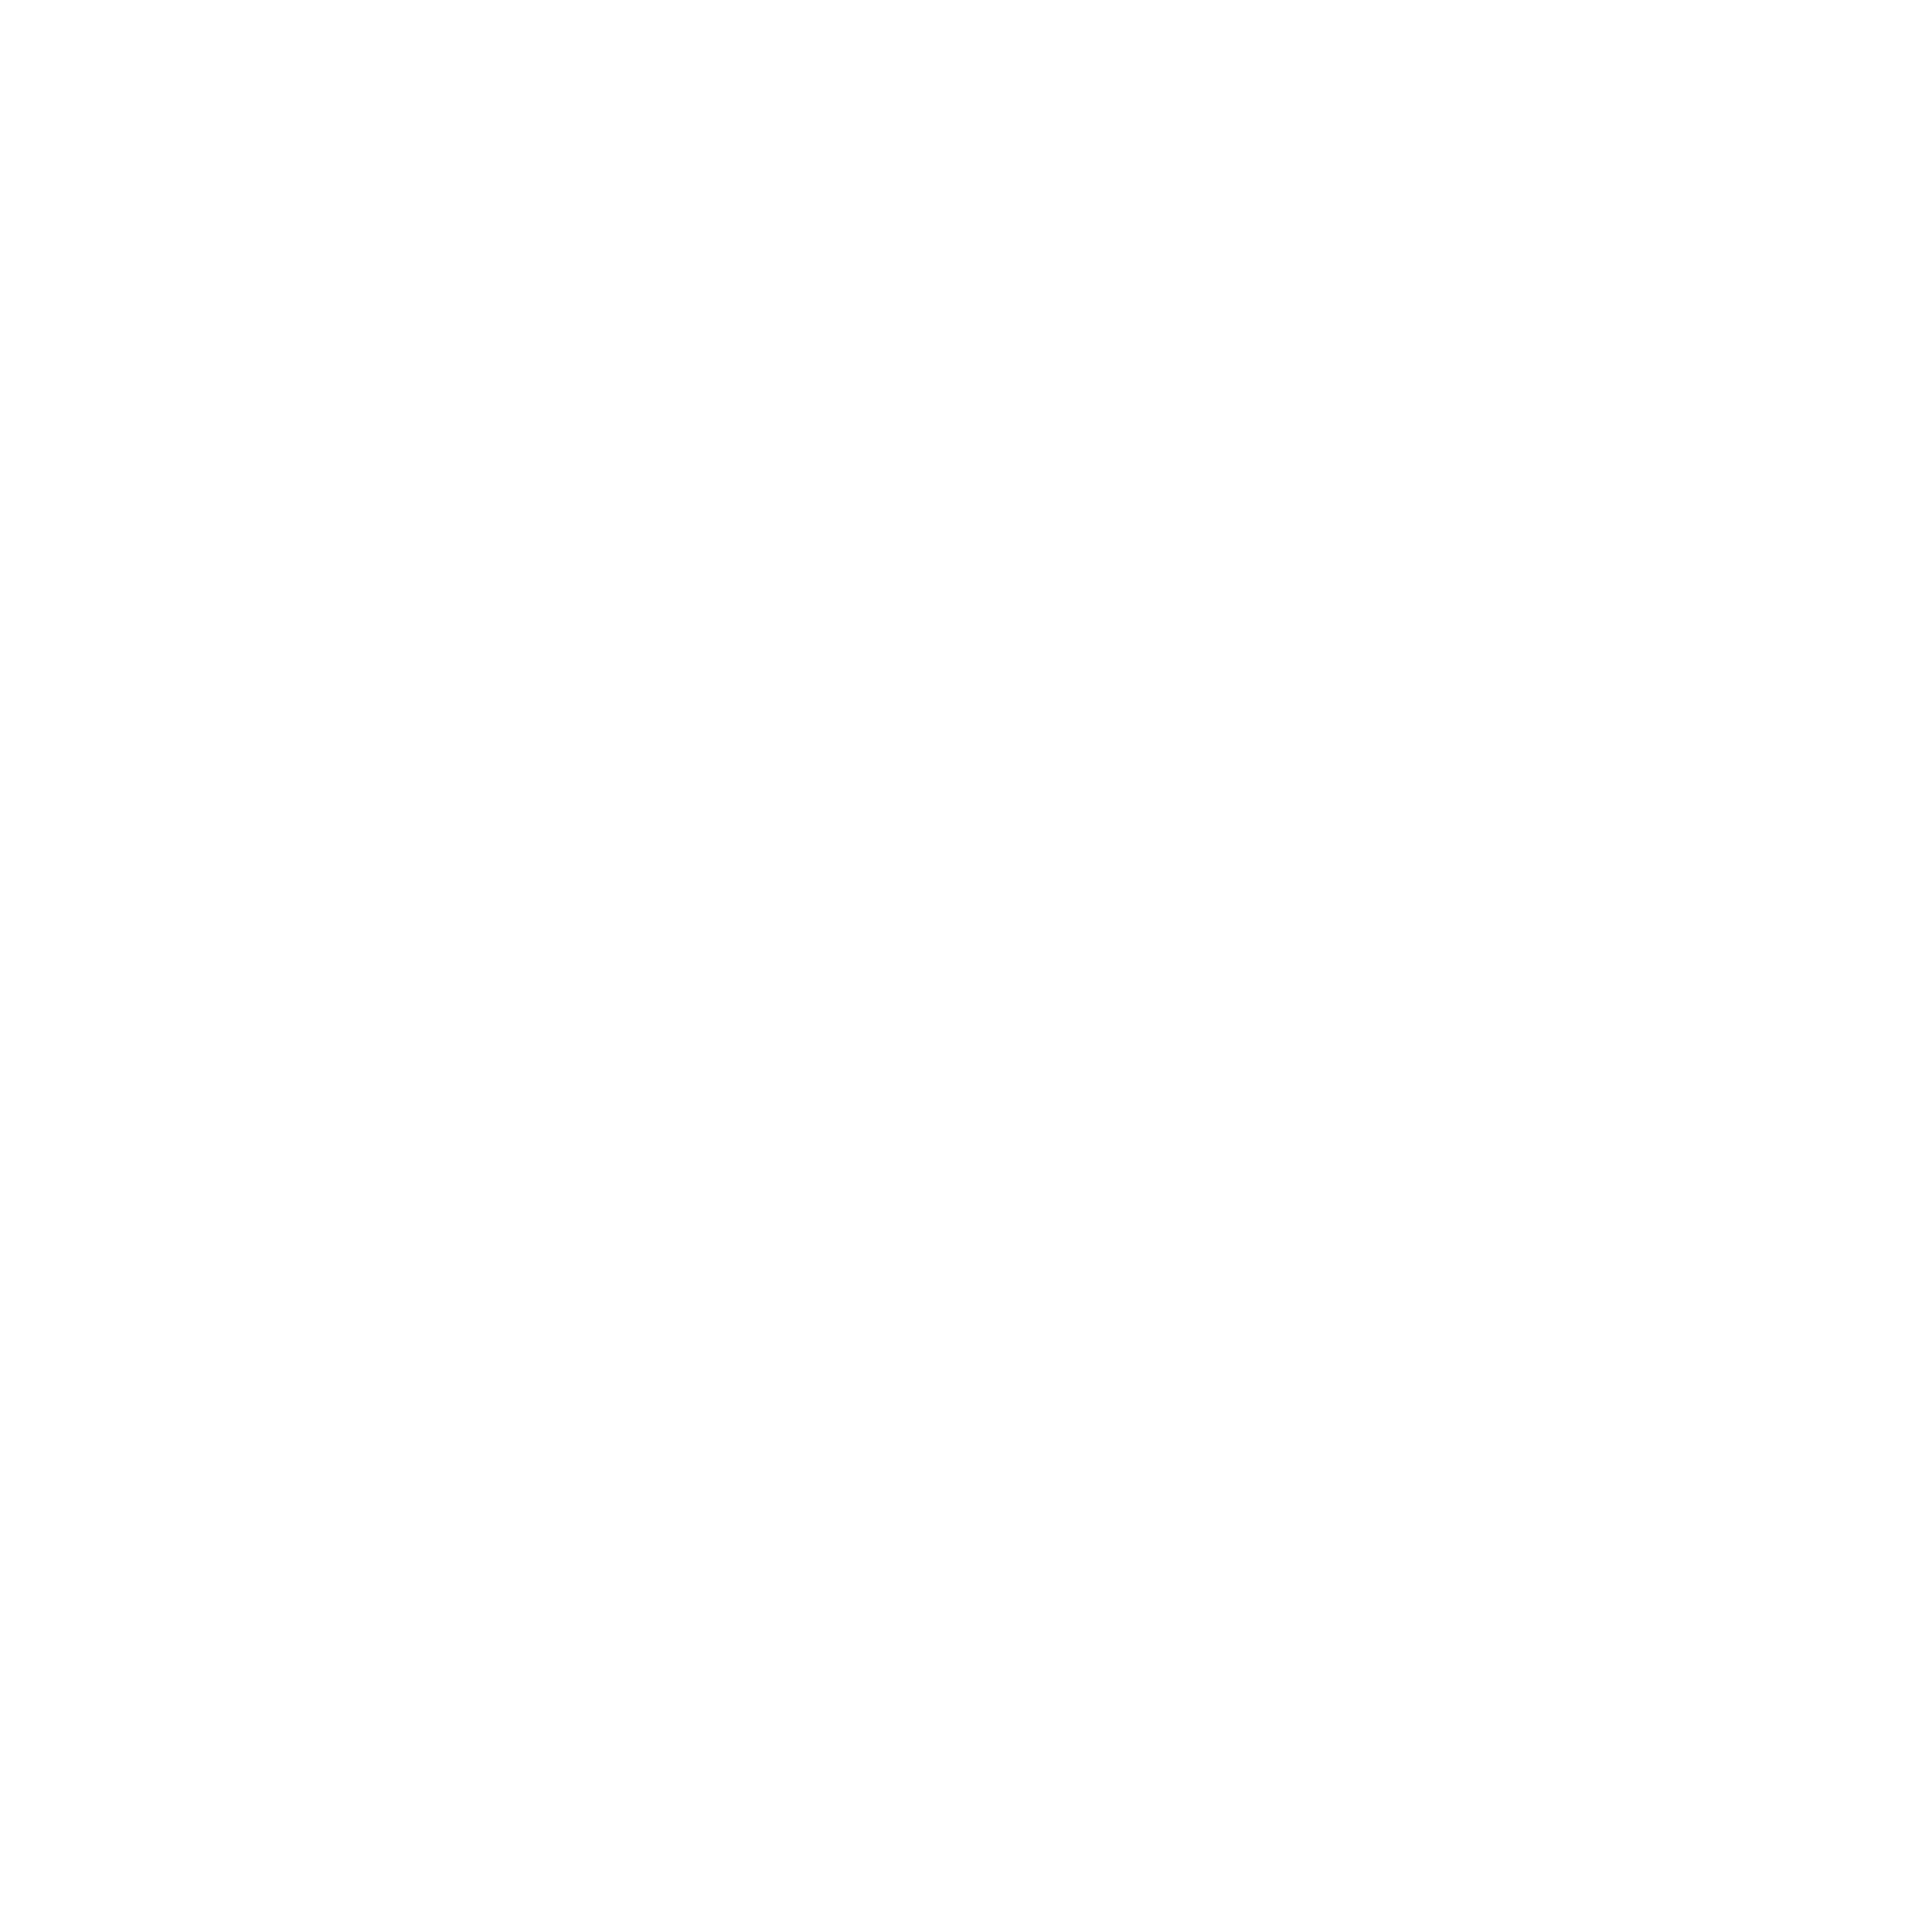 Rant logo